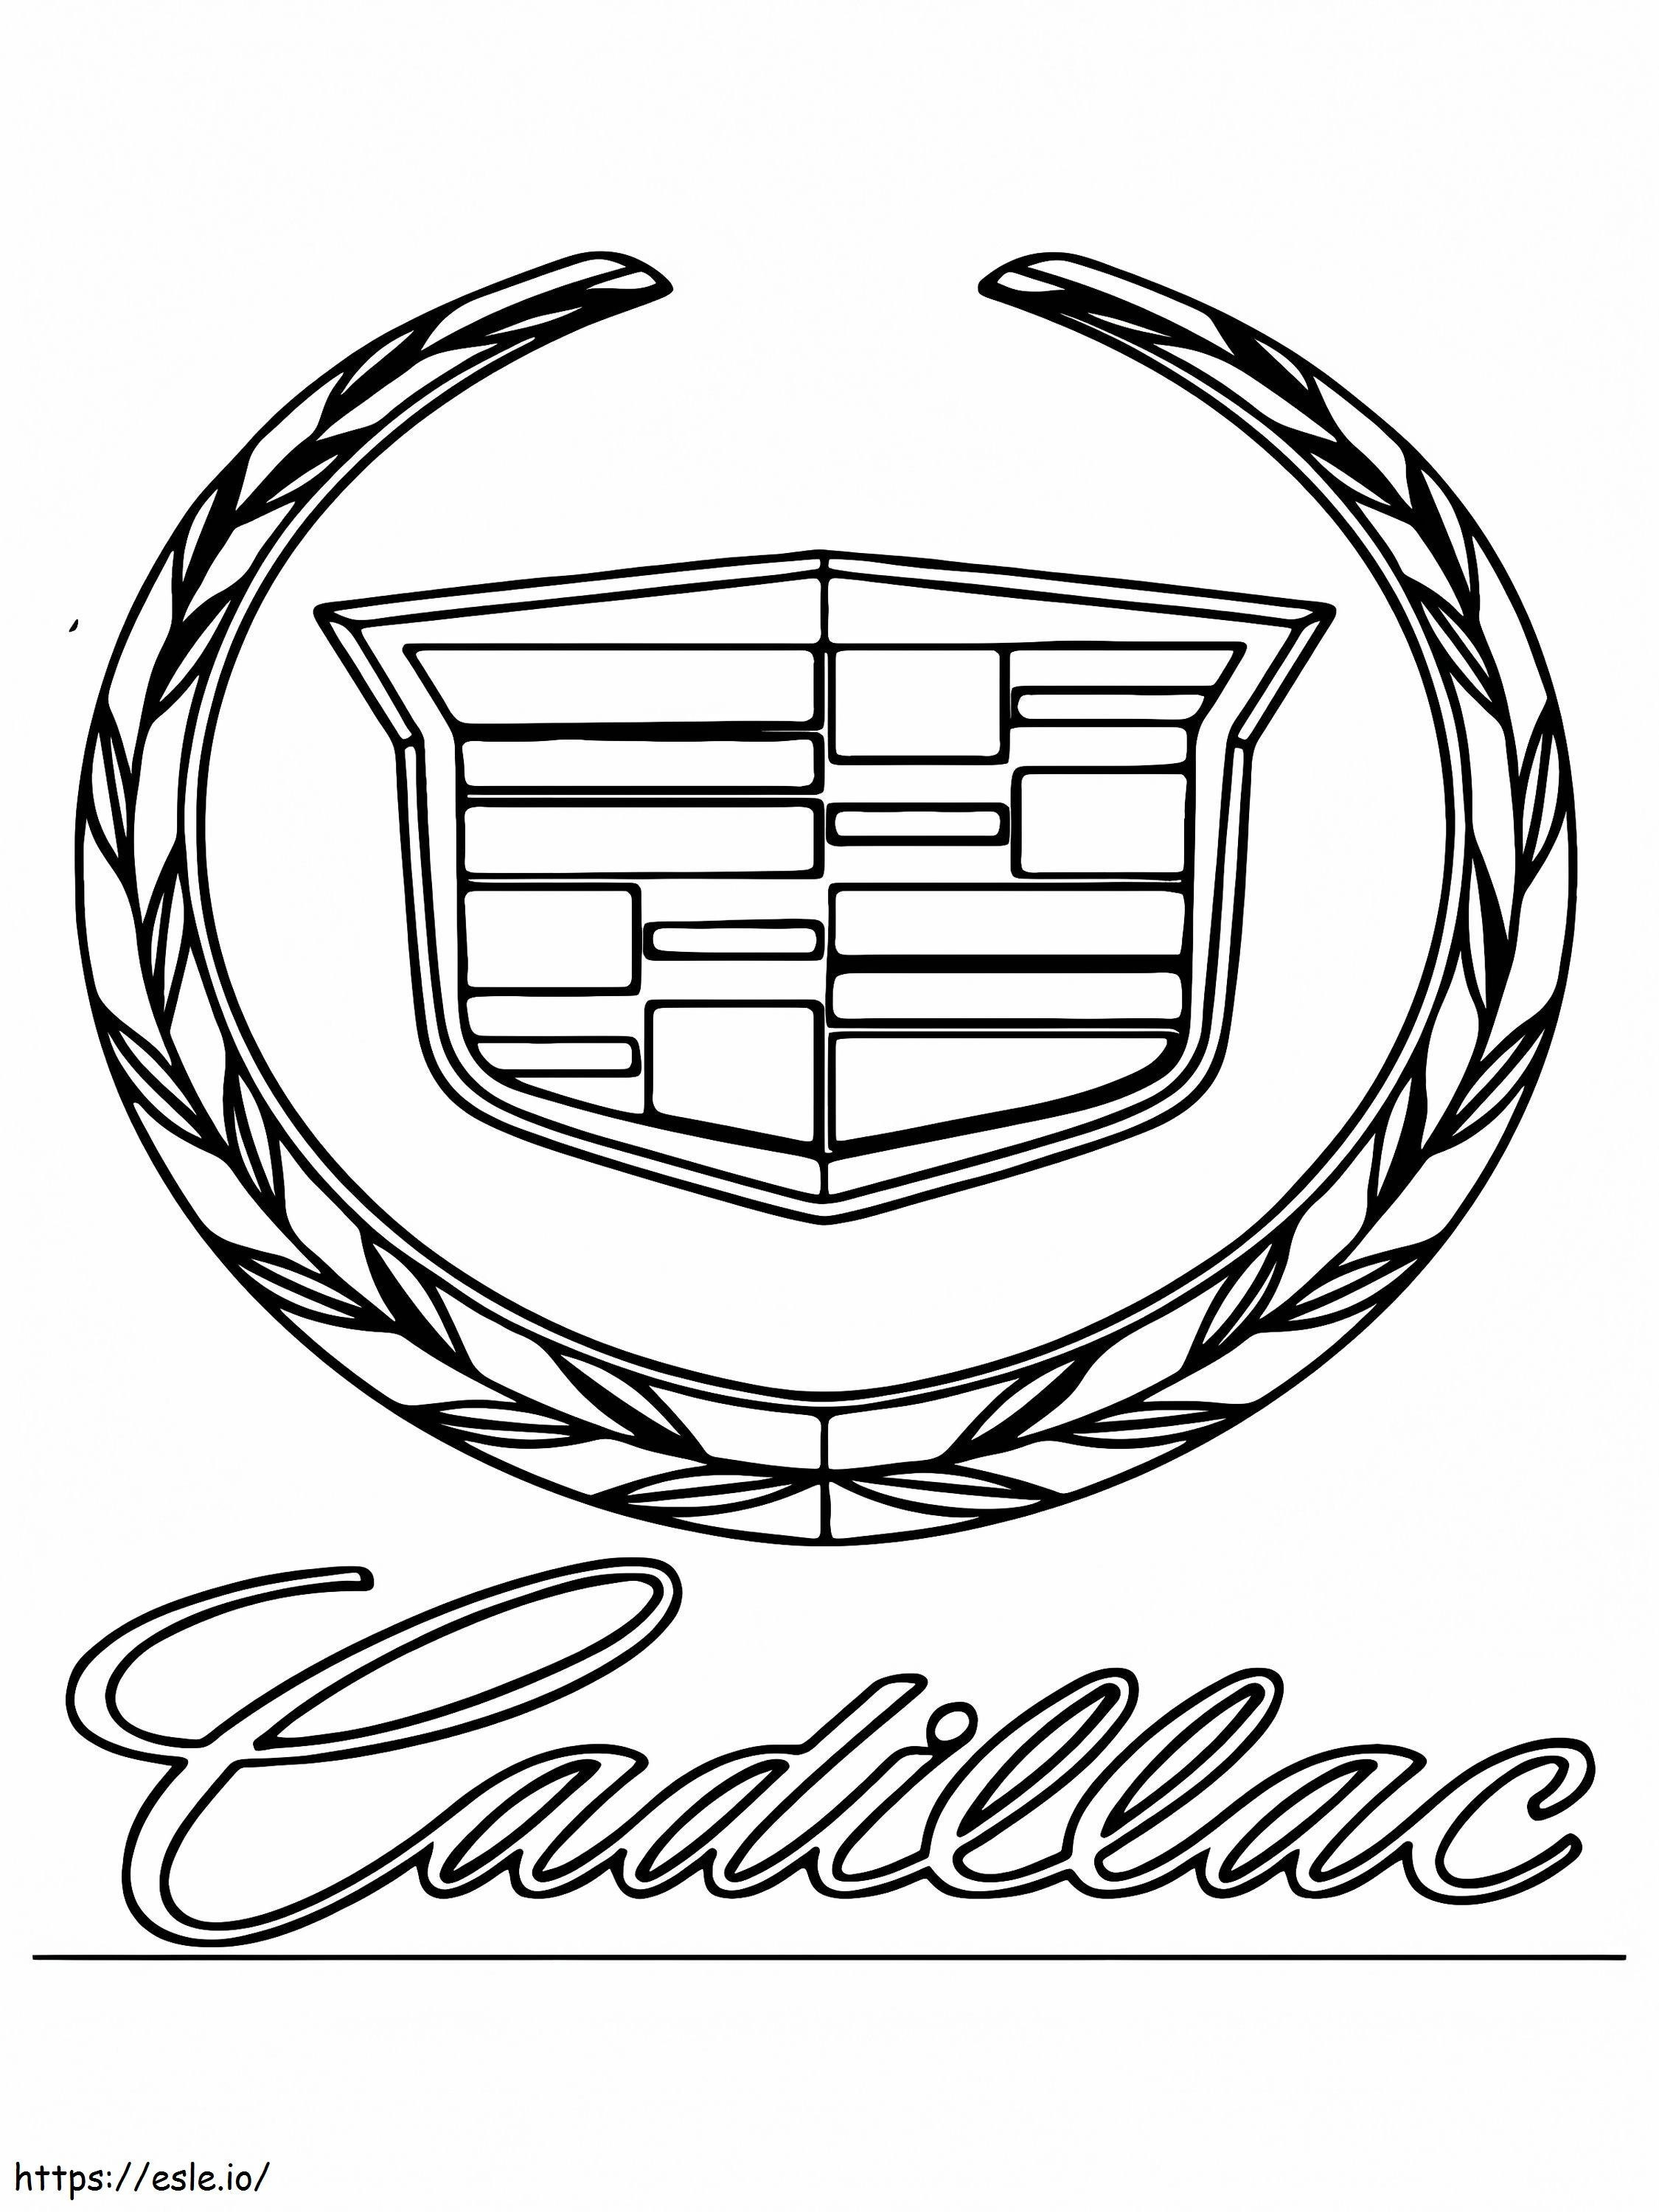 Cadillacin auton logo värityskuva